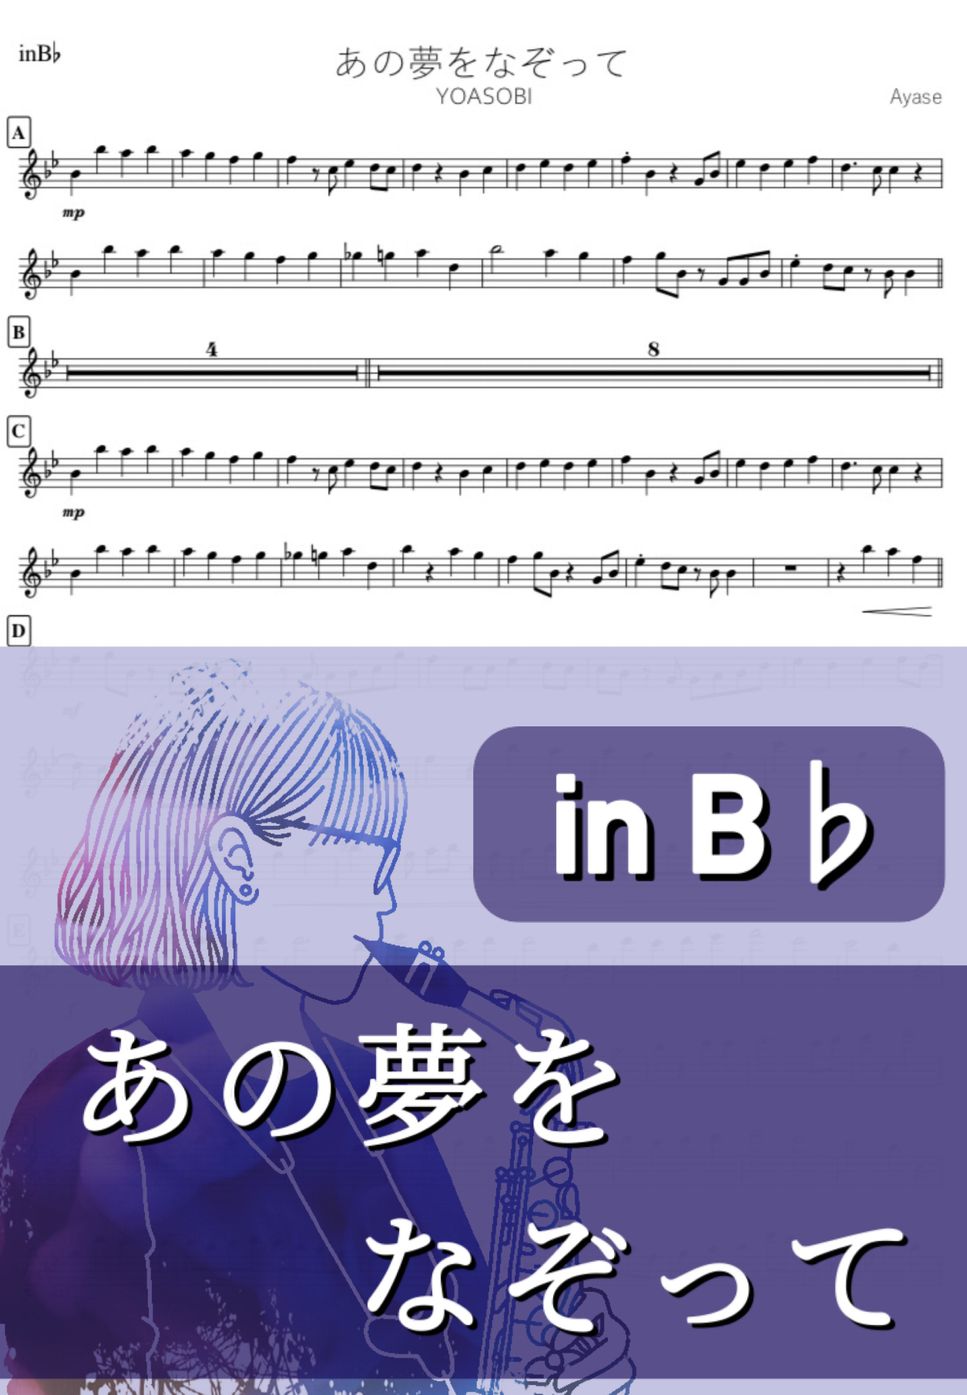 YOASOBI - あの夢をなぞって (B♭) by kanamusic